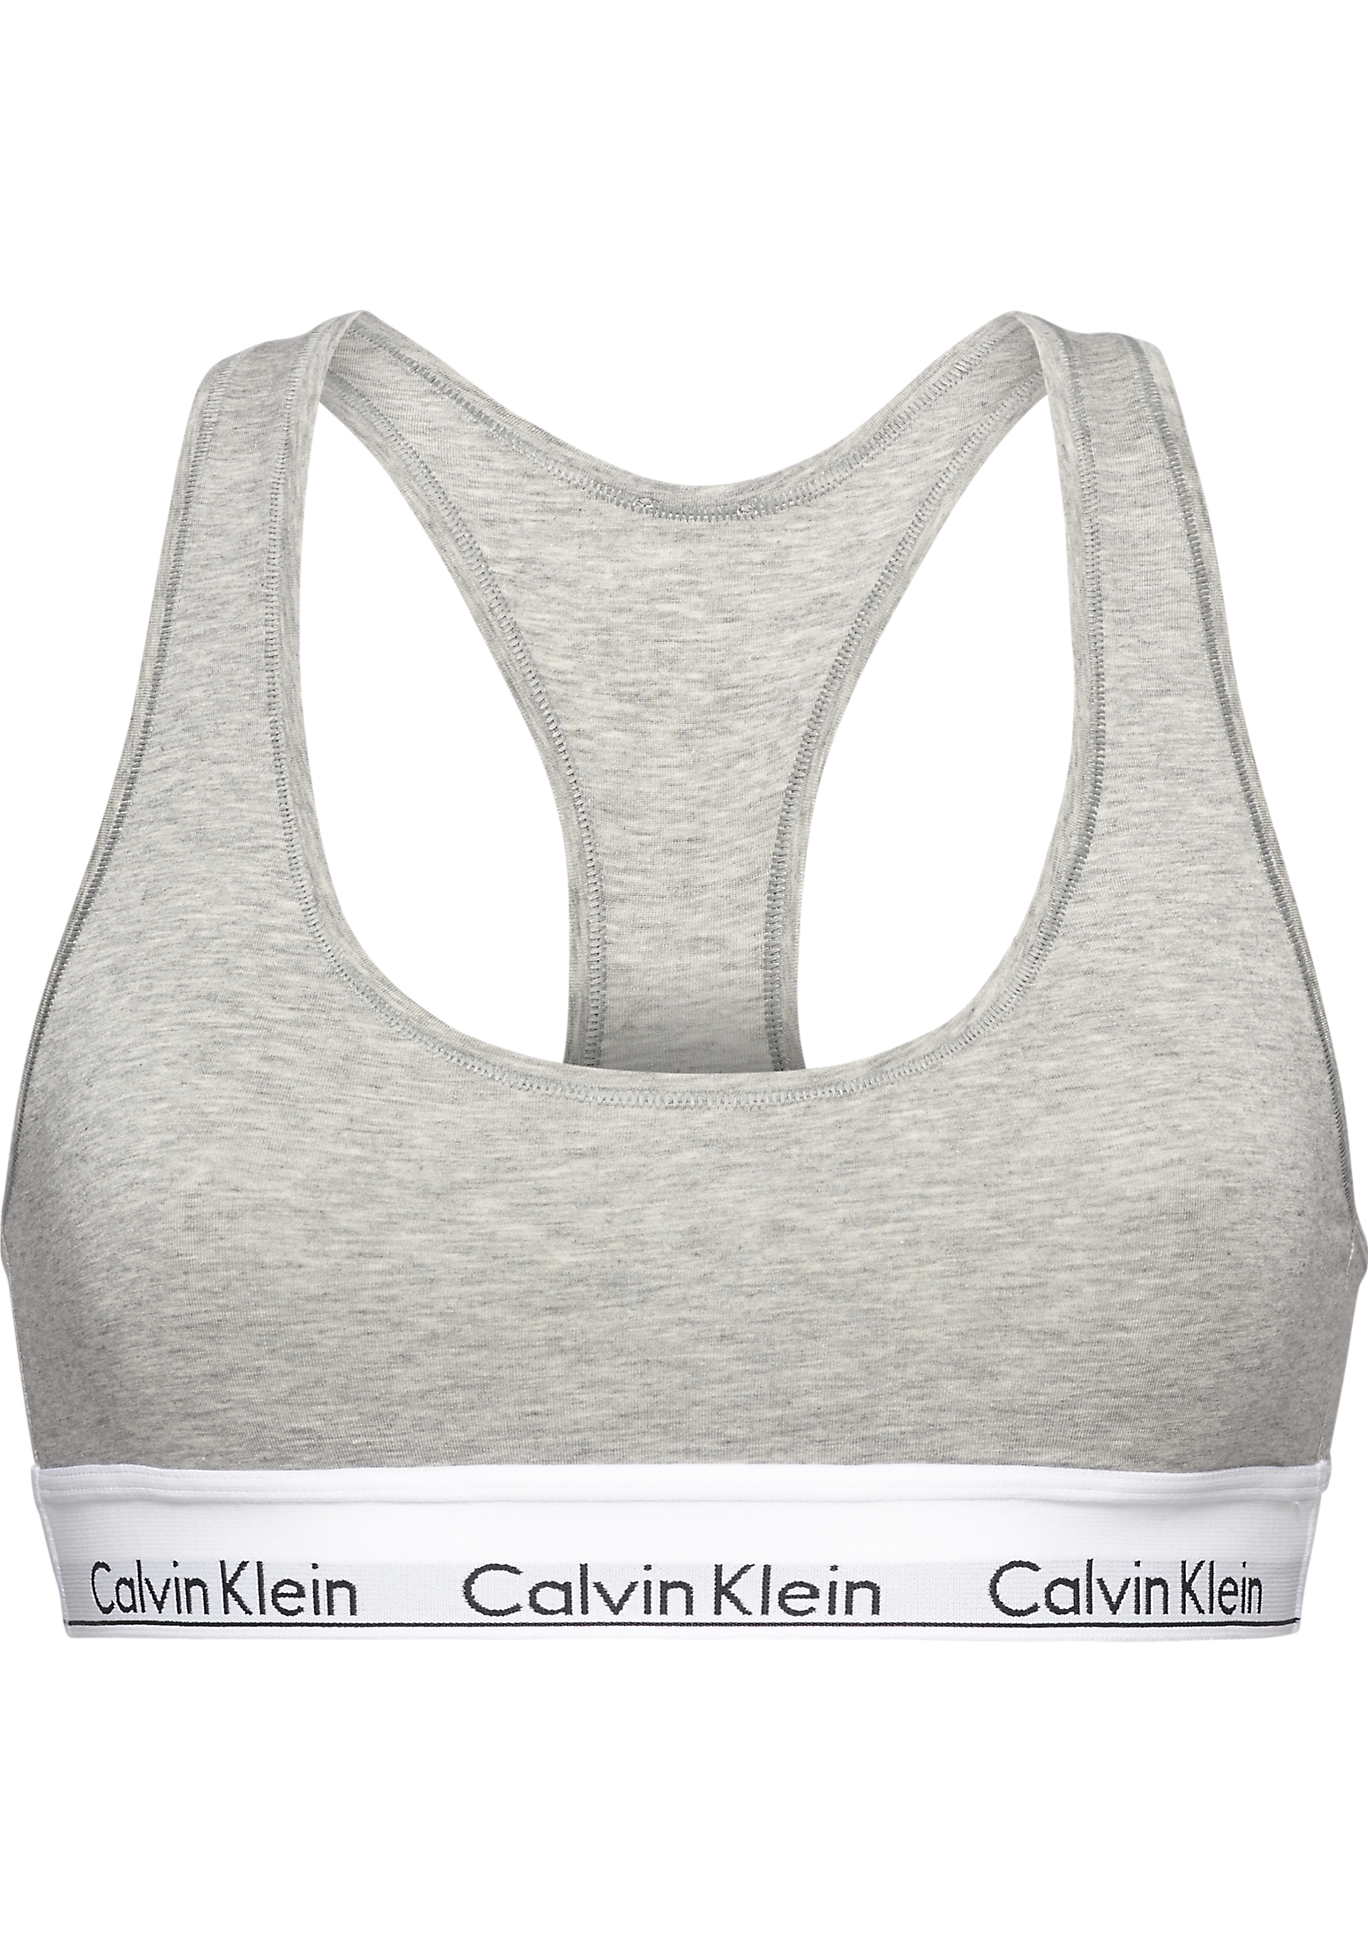 Willen Middellandse Zee dik Calvin Klein dames Modern Cotton bralette top, ongevoerd, grijs - Zomer  SALE tot 50% korting